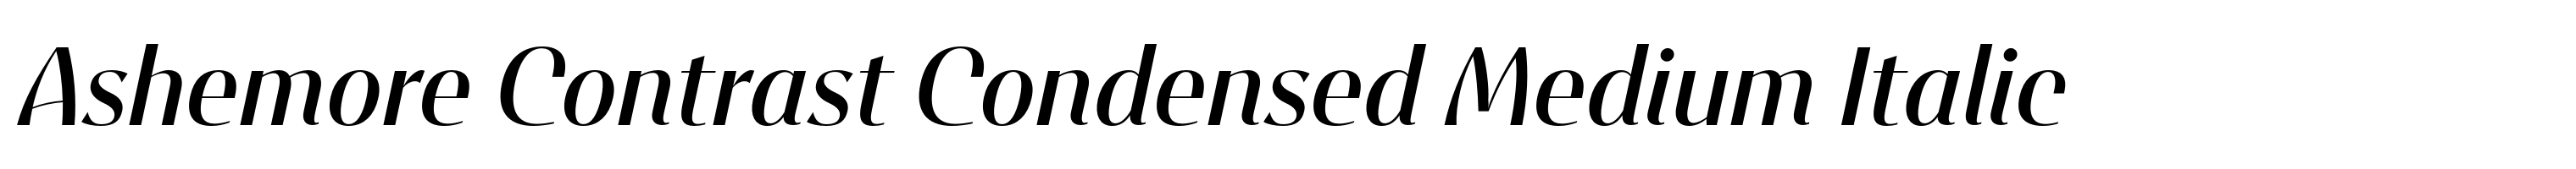 Ashemore Contrast Condensed Medium Italic